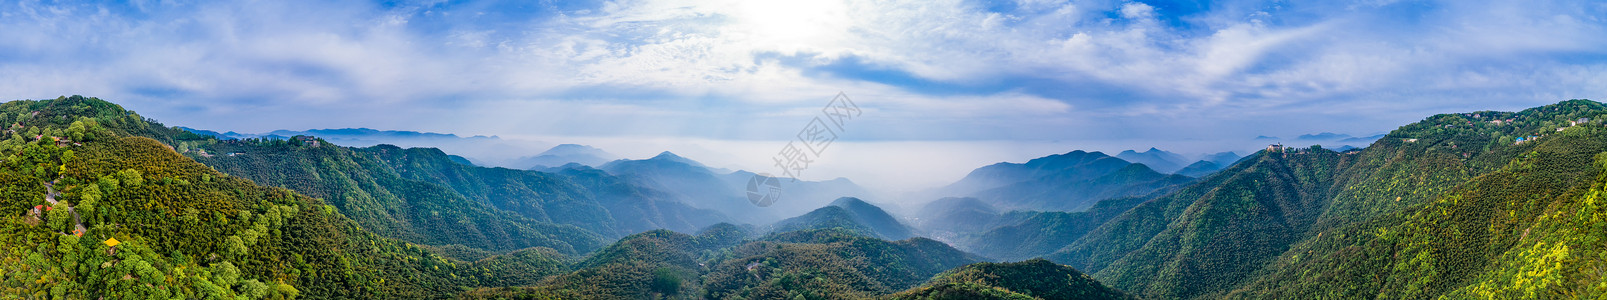 大教莫干山顶峰全景自然风景背景